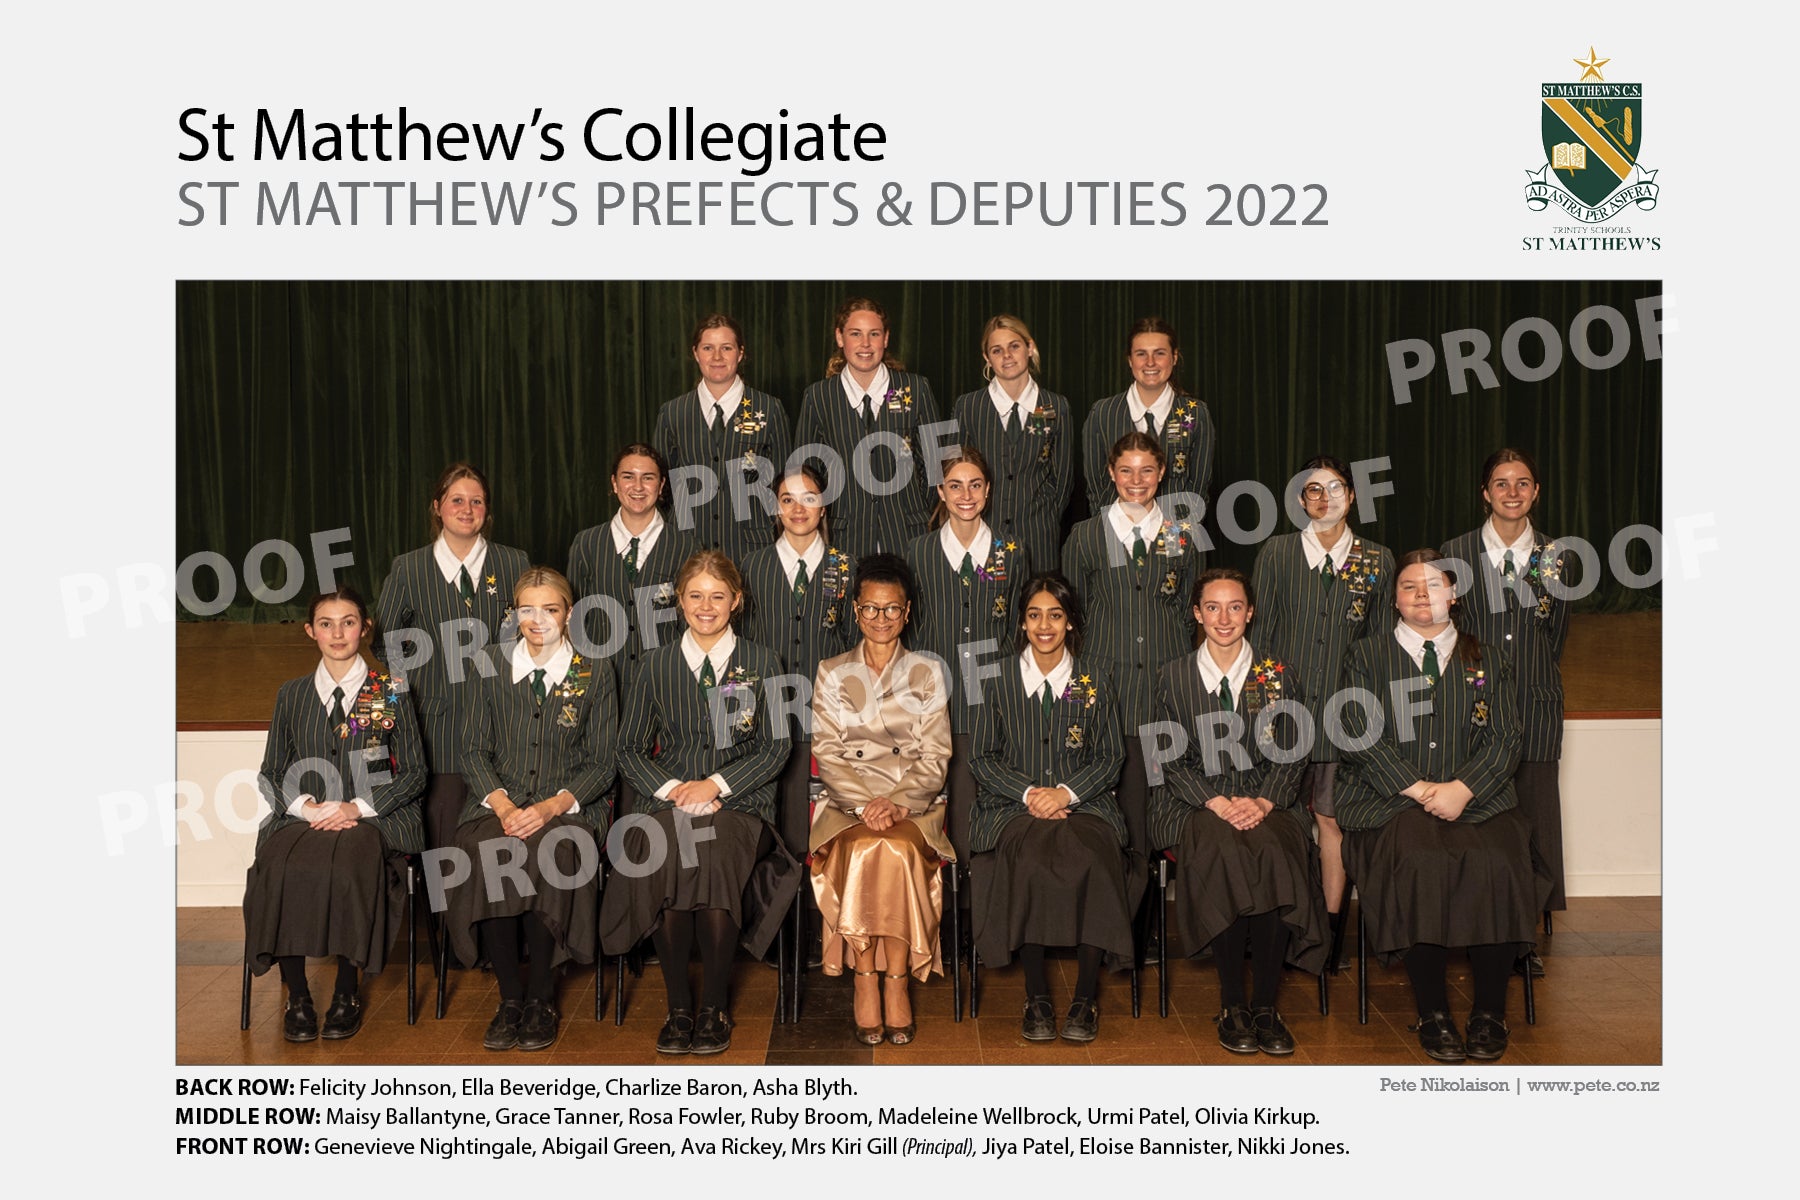 St Matthew's Prefects & Deputies - St Matthew’s Collegiate 2022